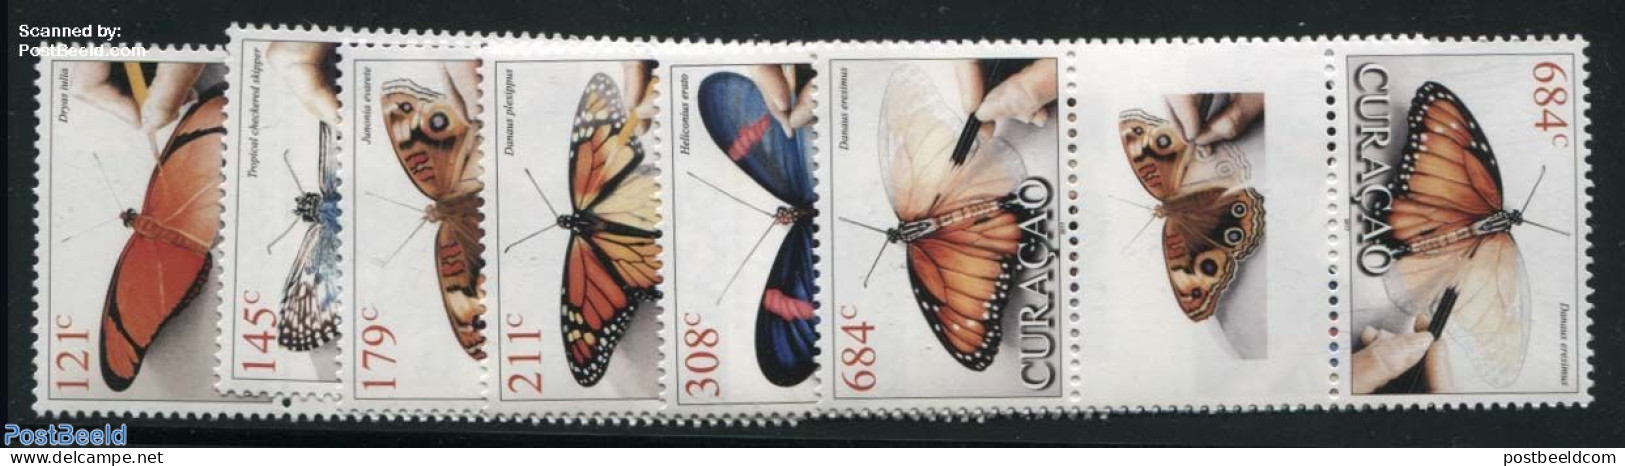 Curaçao 2017 Butterflies 6v, Gutterpairs, Mint NH, Nature - Butterflies - Curaçao, Antilles Neérlandaises, Aruba